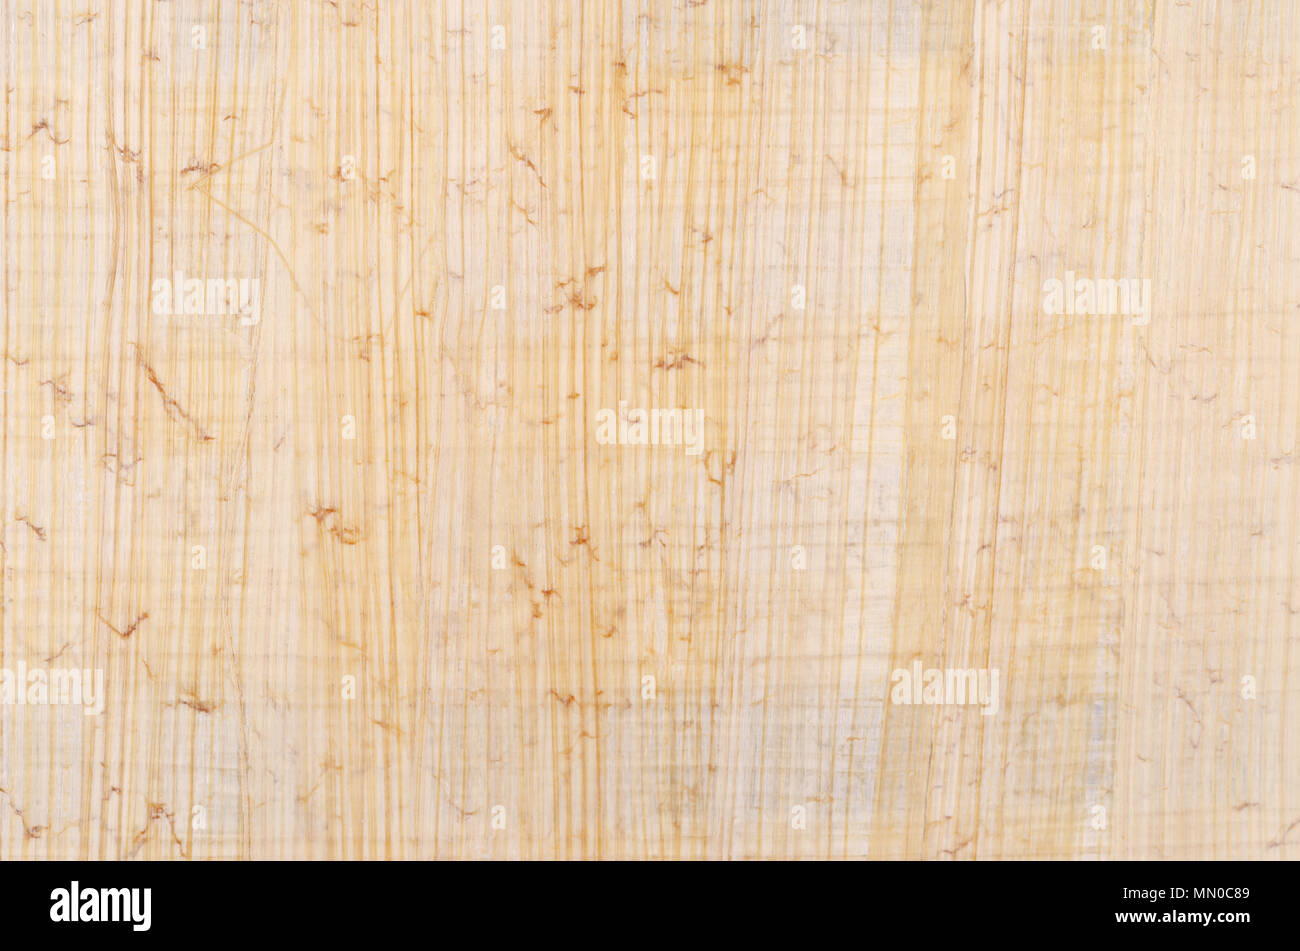 Superficie di papiro. Materiale simile alla carta spessa, usato in tempi antichi come una superficie di scrittura. Fatta di midollo della pianta di papiro, cyperus papyrus. Foto Stock